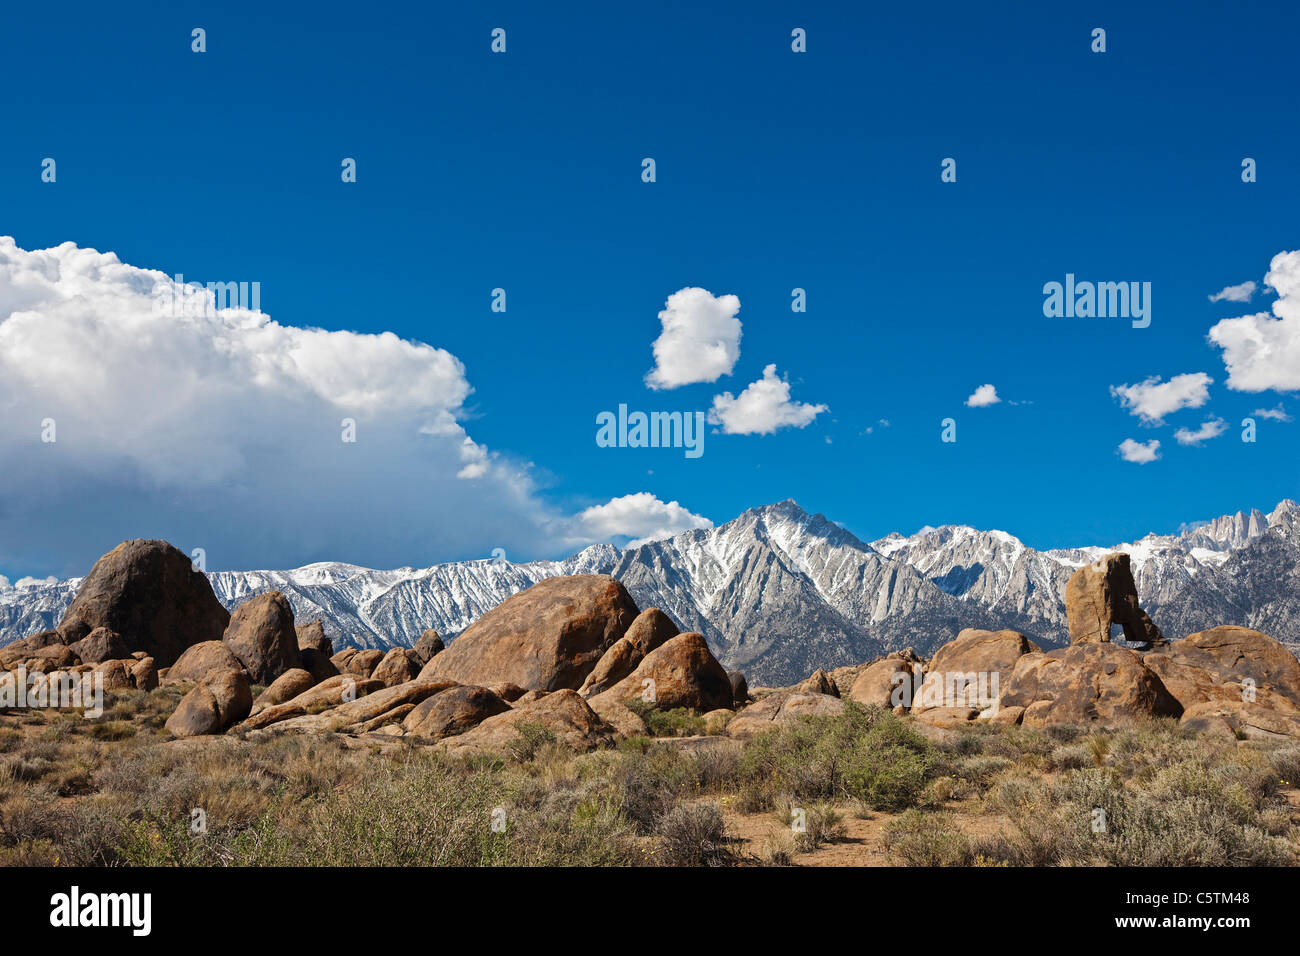 USA, California, Sierra Nevada, Mount Whitney Stock Photo